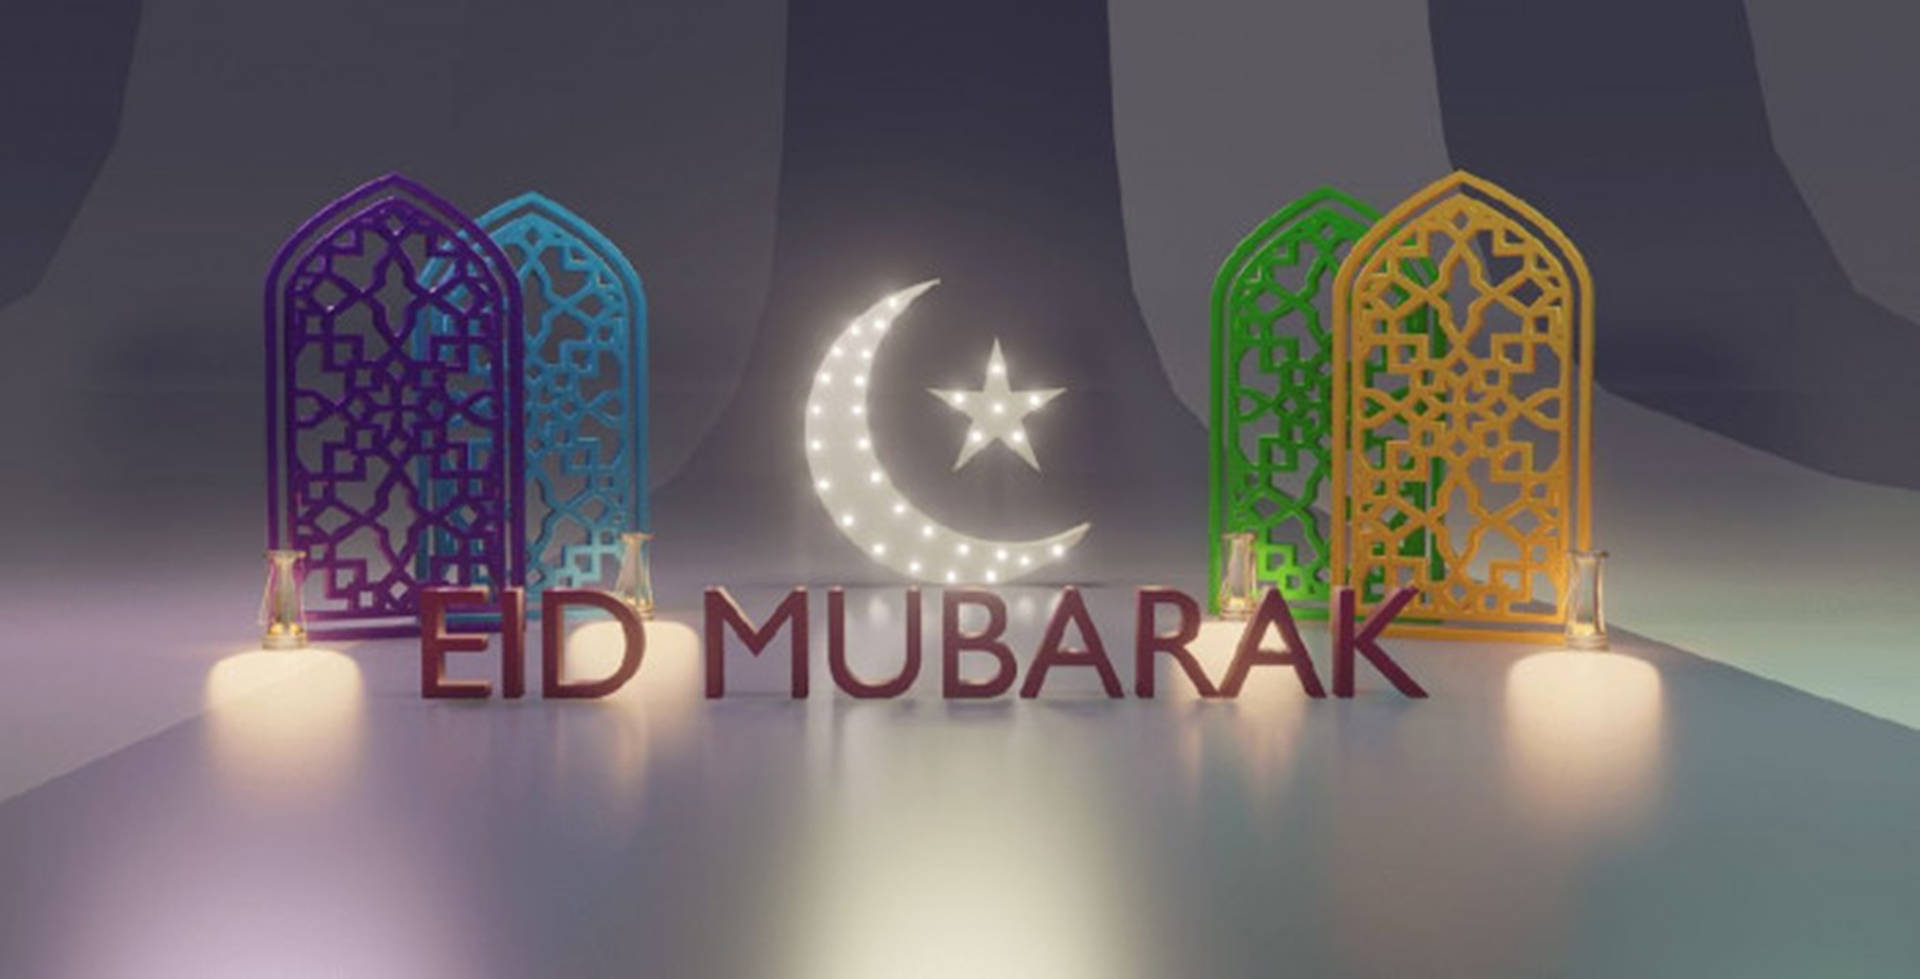 Eid-ul-adha Mubarak Islam Arches Background